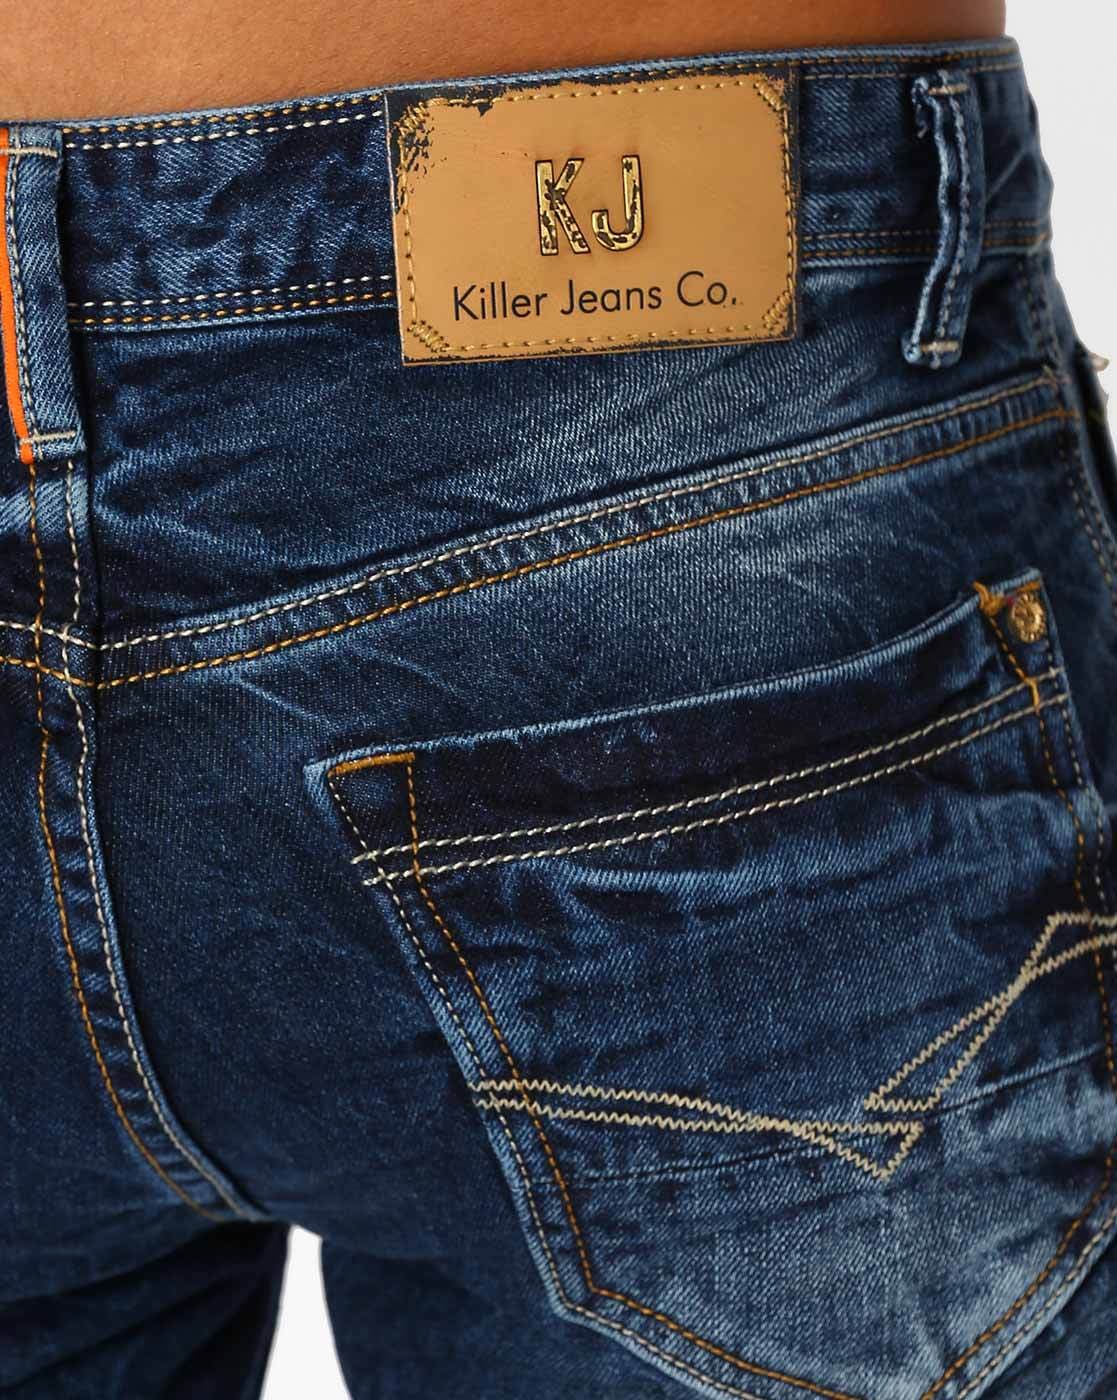 killer brand jeans price